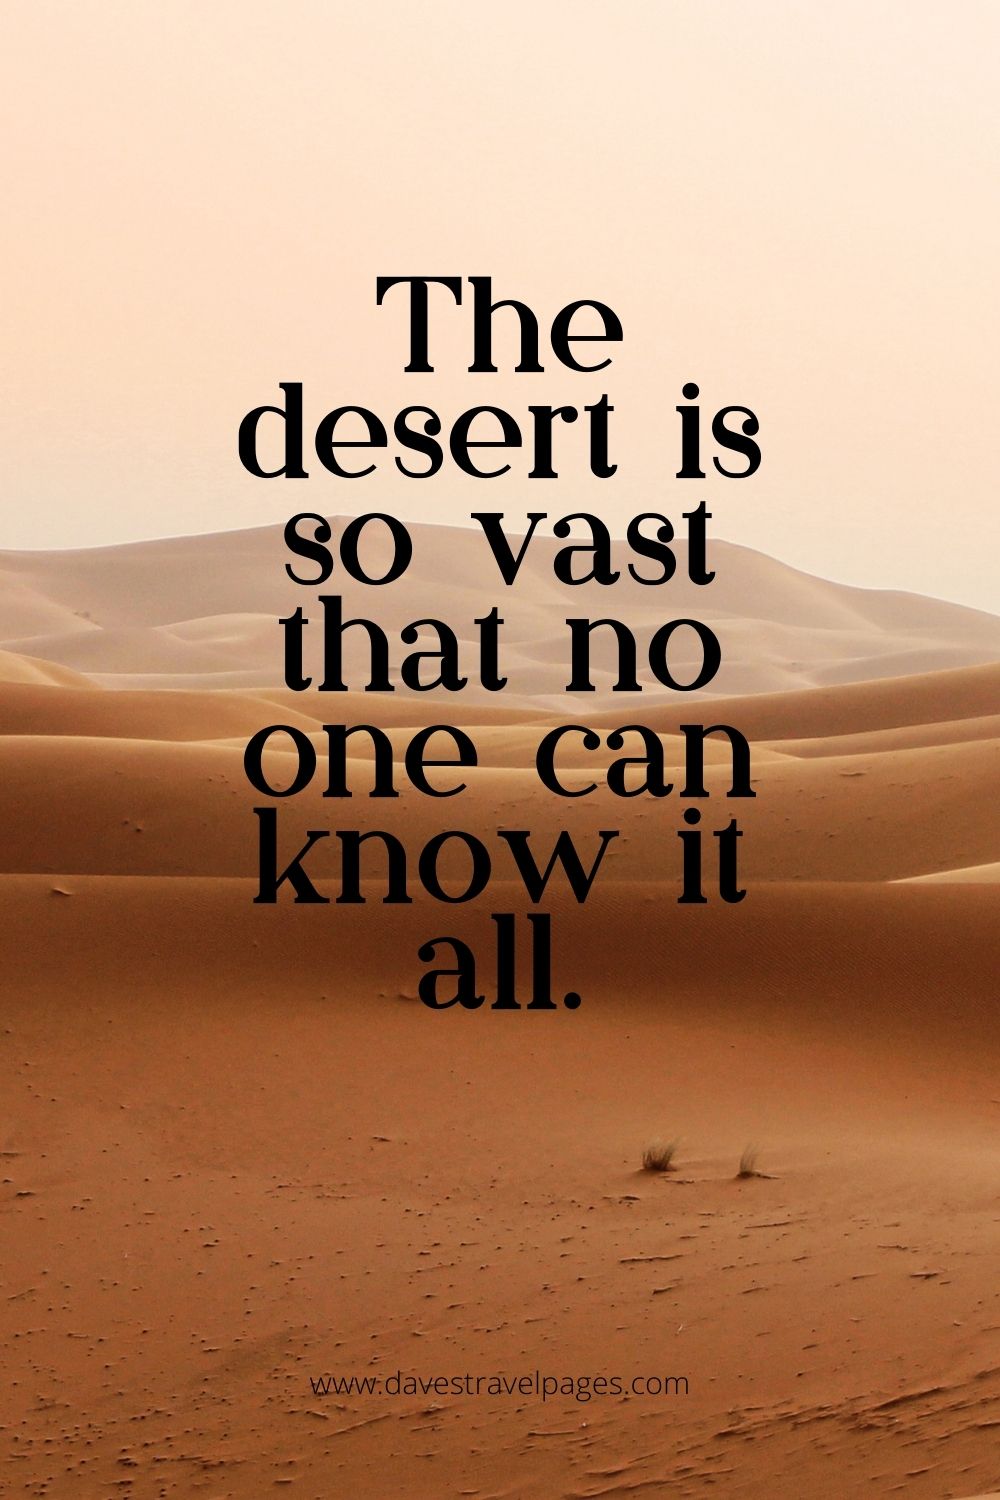 The desert is so vast caption